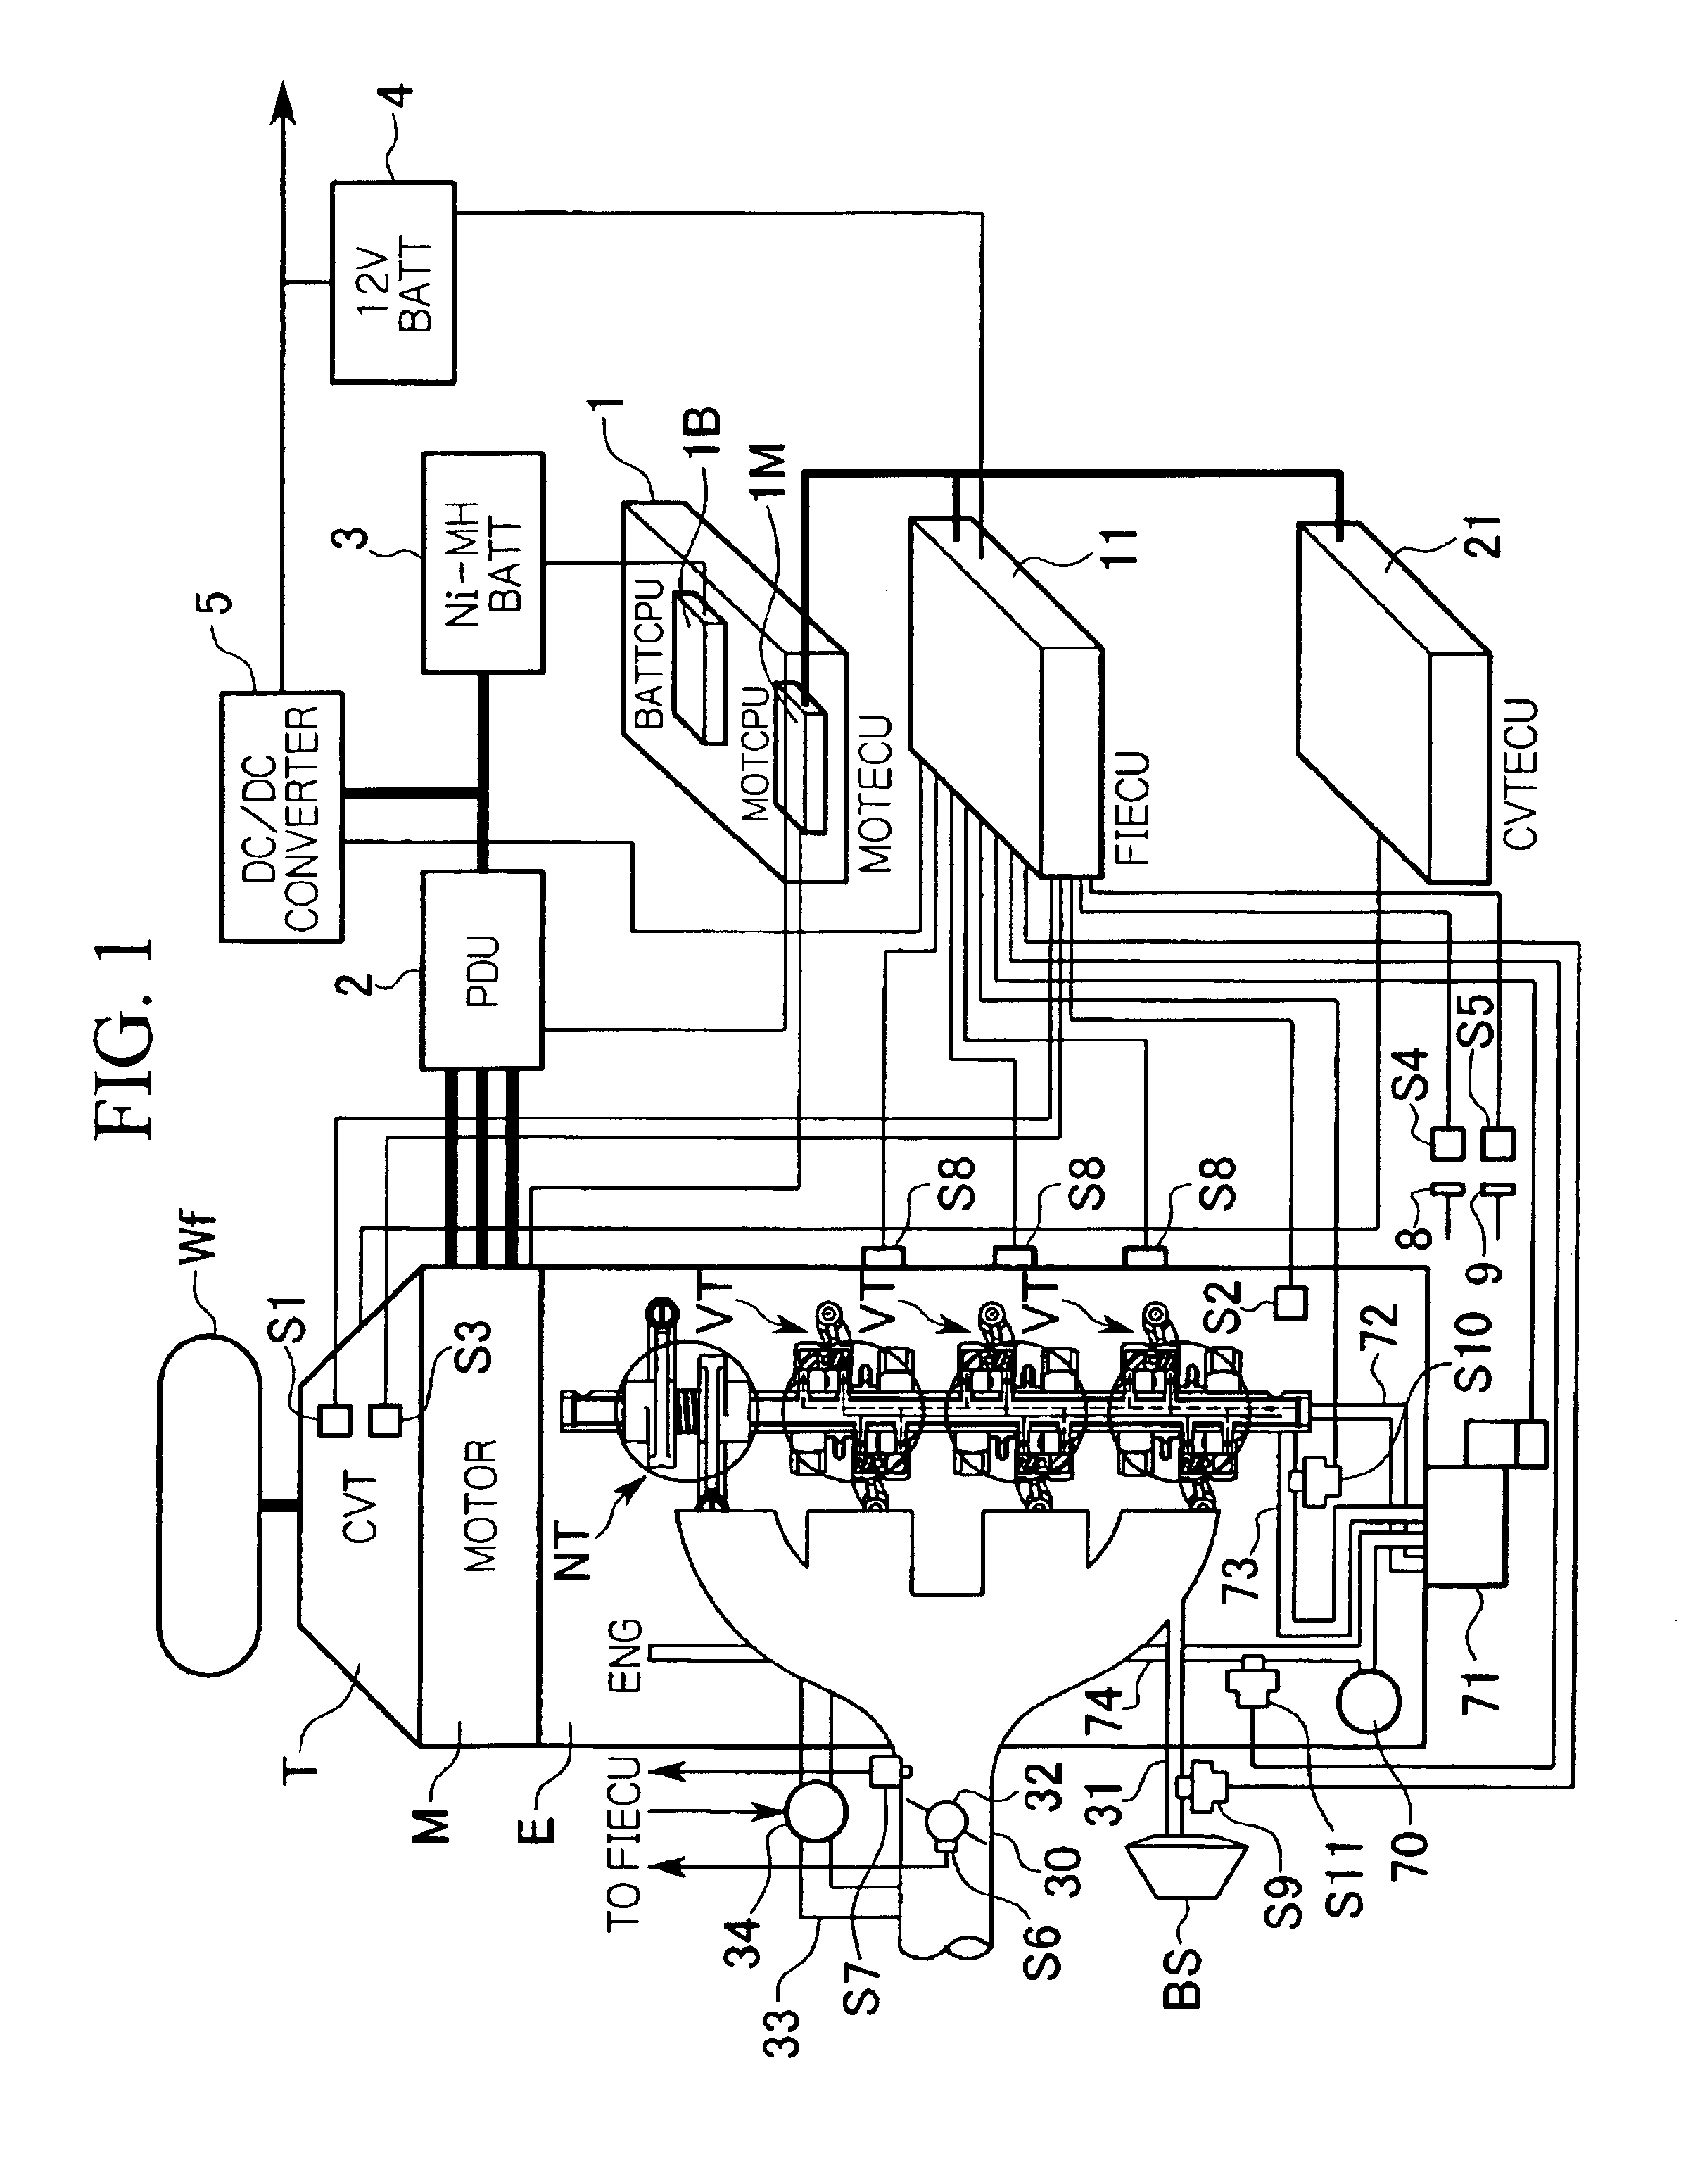 Motor controller of deceleration idling-cylinder engine vehicle